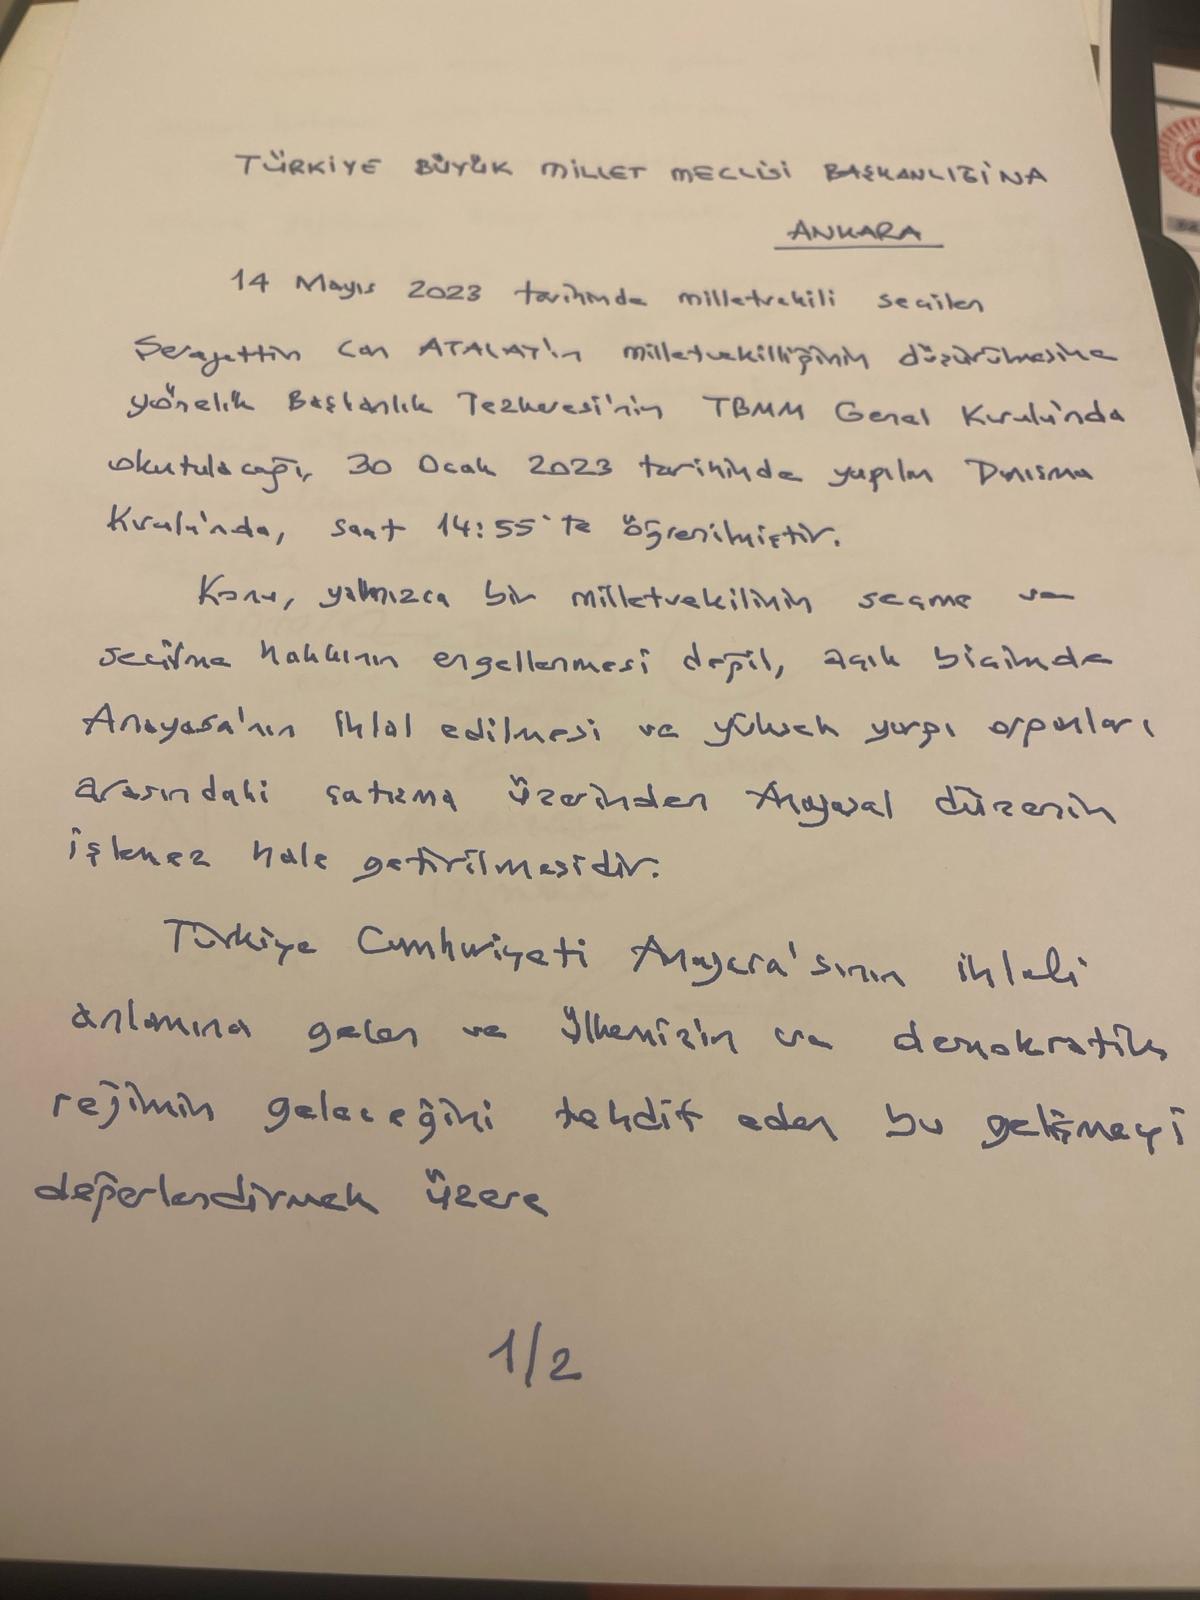 TBMM toplandı: Can Atalay'ın milletvekilliği düşürülecek